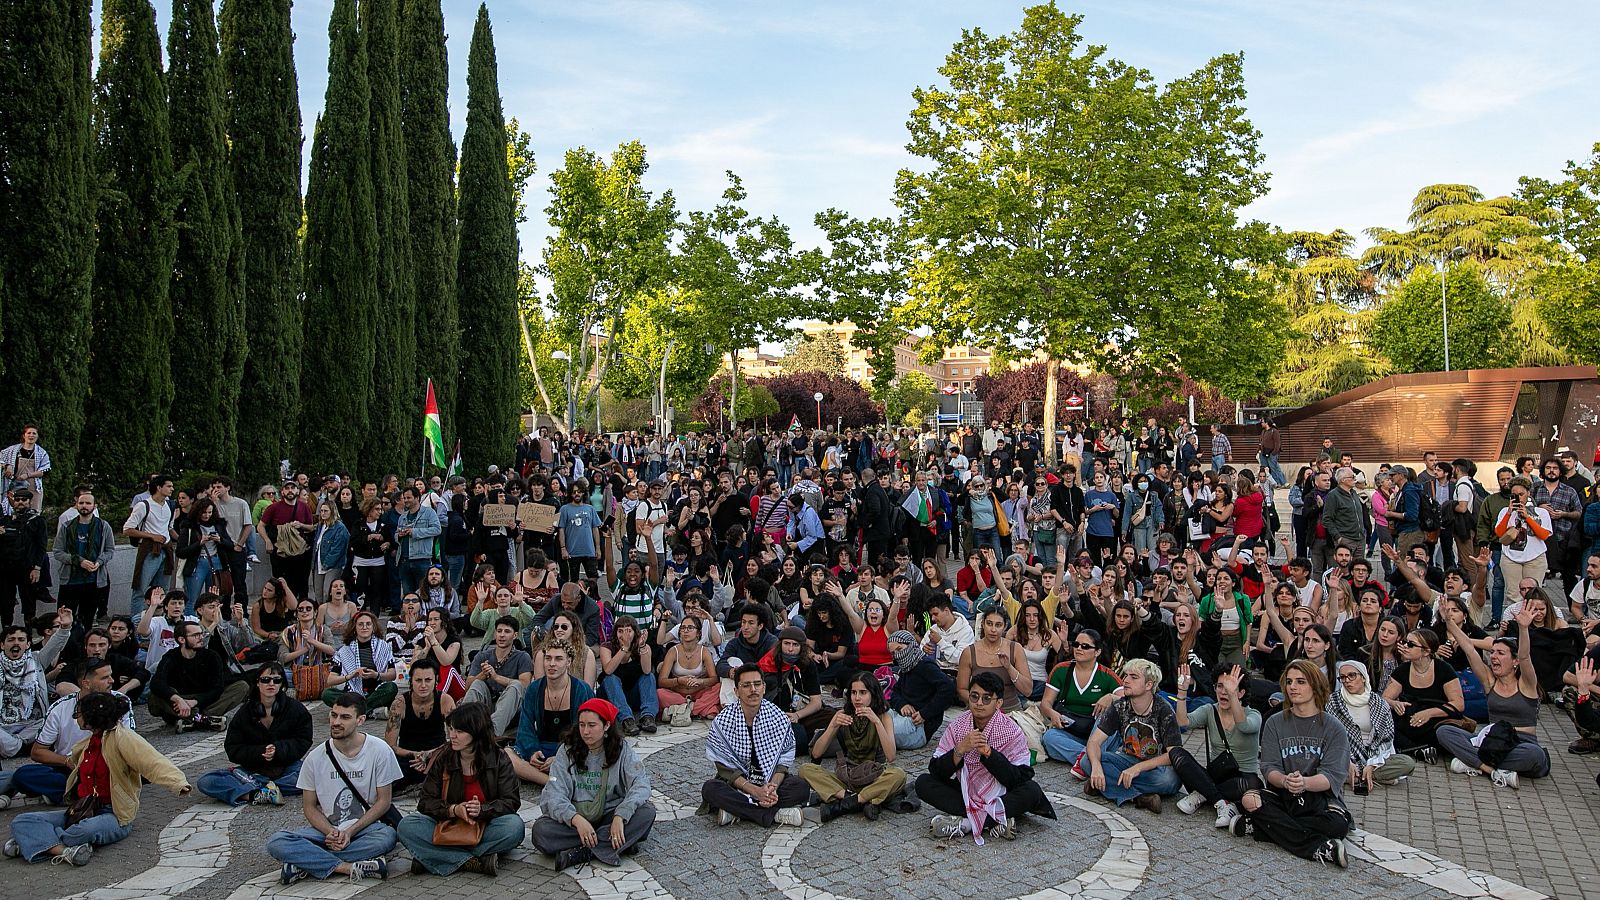 Las universidades españolas, dispuestas a suspender acuerdos de colaboración con Israel a raíz de las protestas